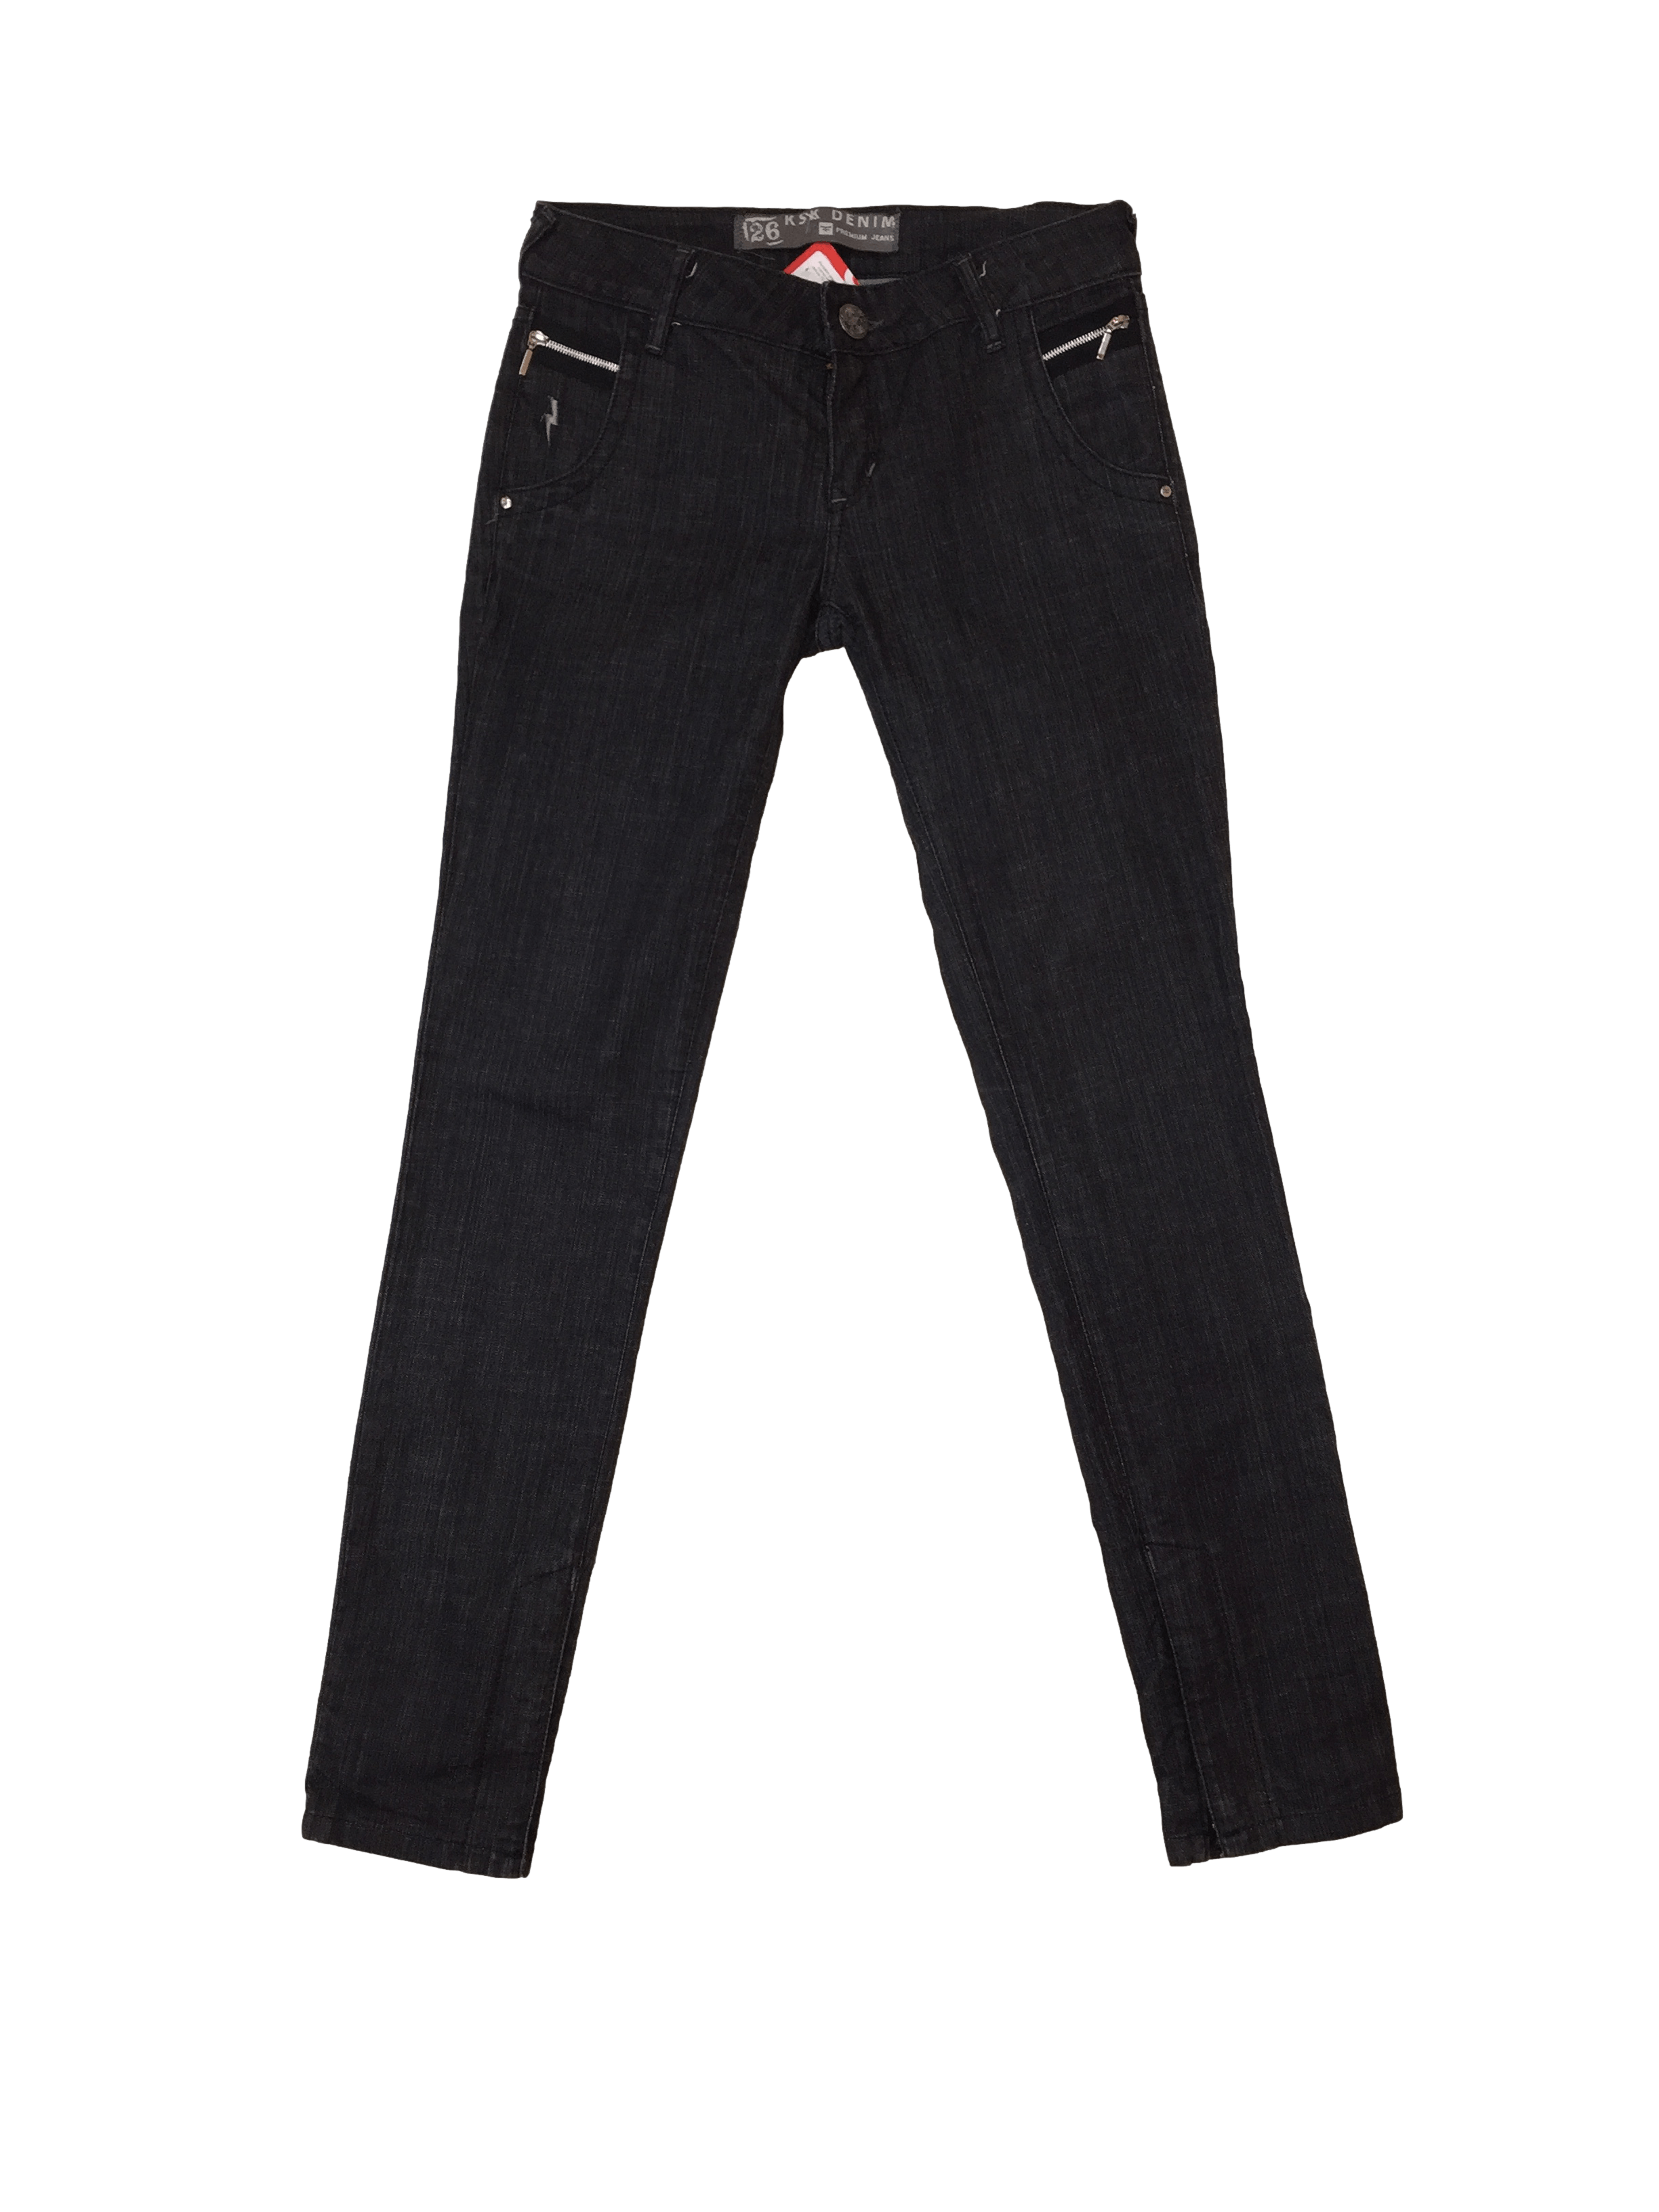 Pantalón jean negro Kosiuko con cierres en bolsillos y botapie. Cintura 70 cm, Tiro 20 cm, Largo 99 cm.